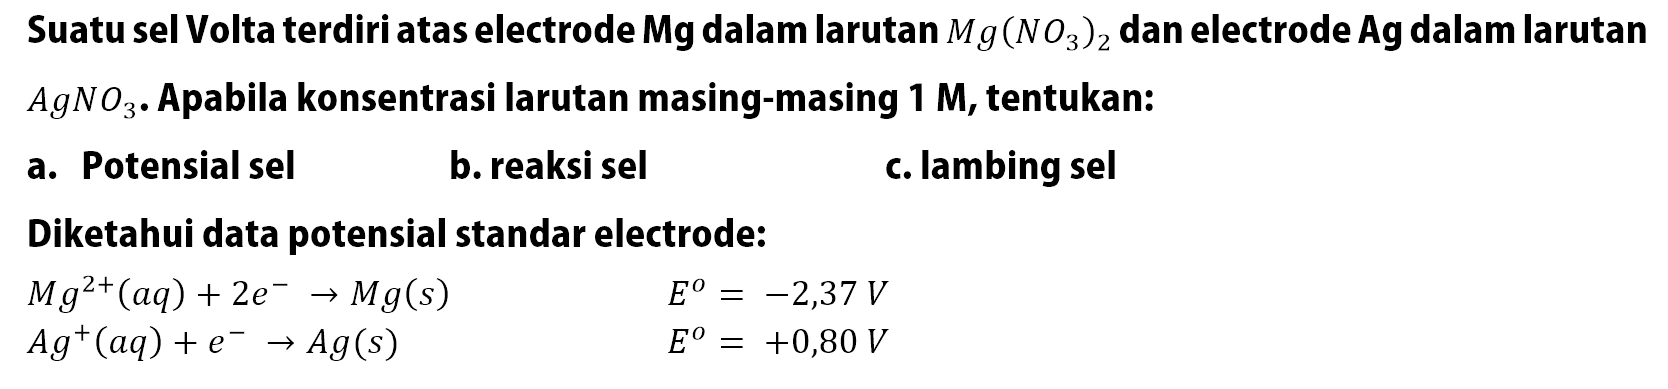 Suatu sel Volta terdiri atas electrode Mg dalam larutan Mg(NO3)2 dan electrode Ag dalam larutan AgNO3. Apabila konsentrasi larutan masing-masing 1 M, tentukan: a. Potensial sel b. reaksi sel C. lambing sel Diketahui data potensial standar electrode: Mg^(2+)(aq) + 2e^- -> Mg(s) E^o = -2,37 V Ag^+ (aq) + e^- -> Ag(s) E^o = +0,80 V